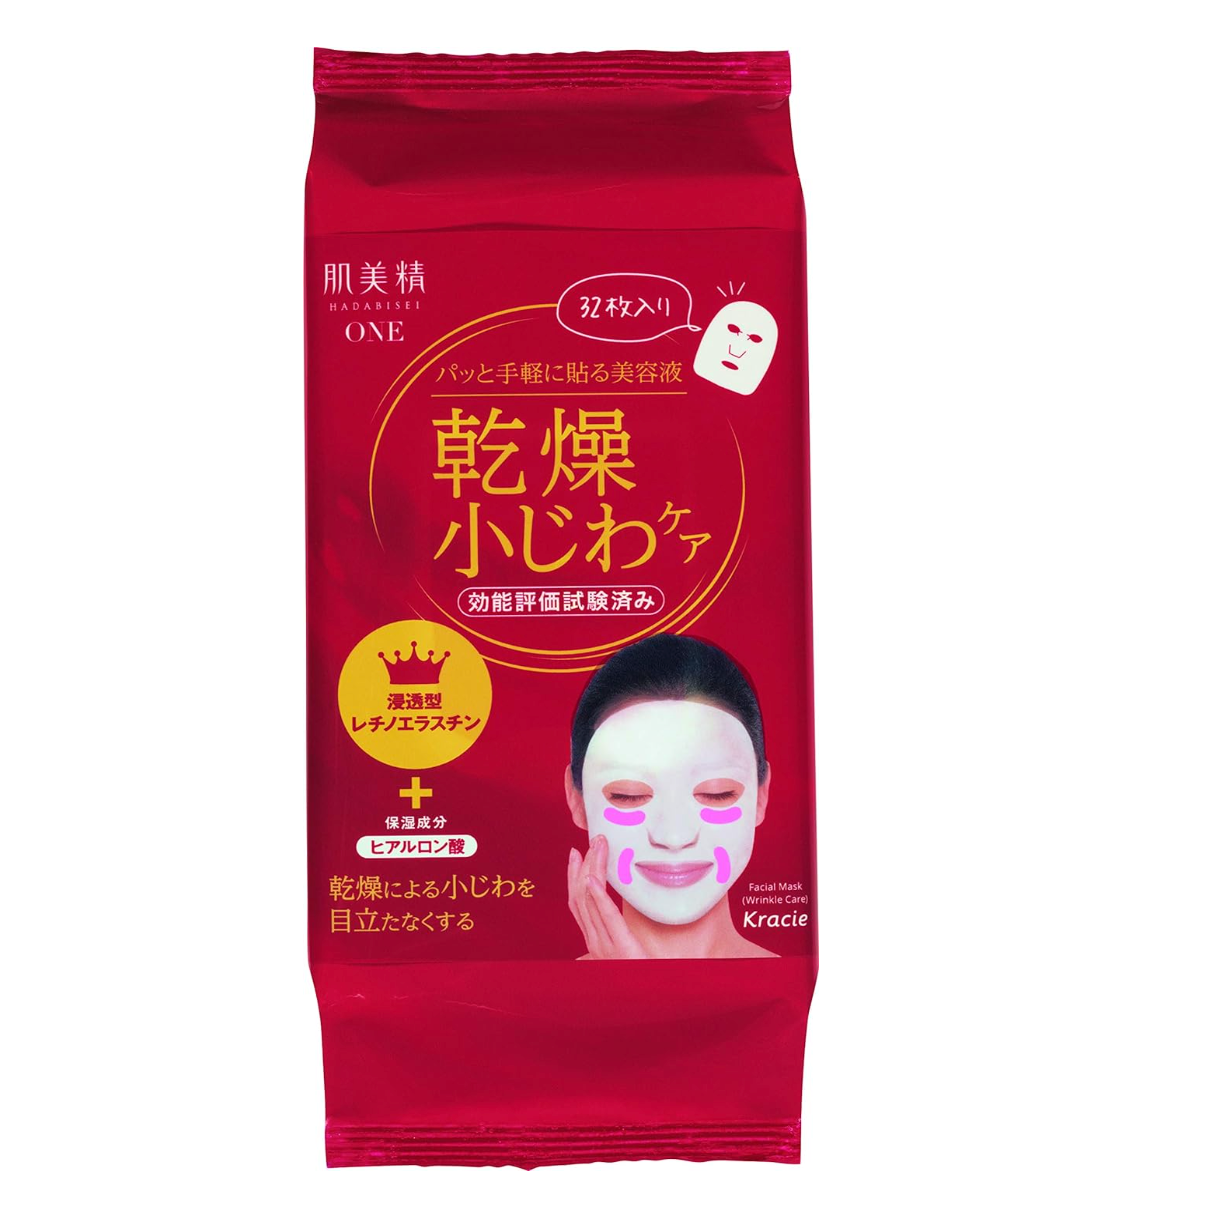 Hadabisei Wrinkle Care Essence Face Mask 30 Sheets